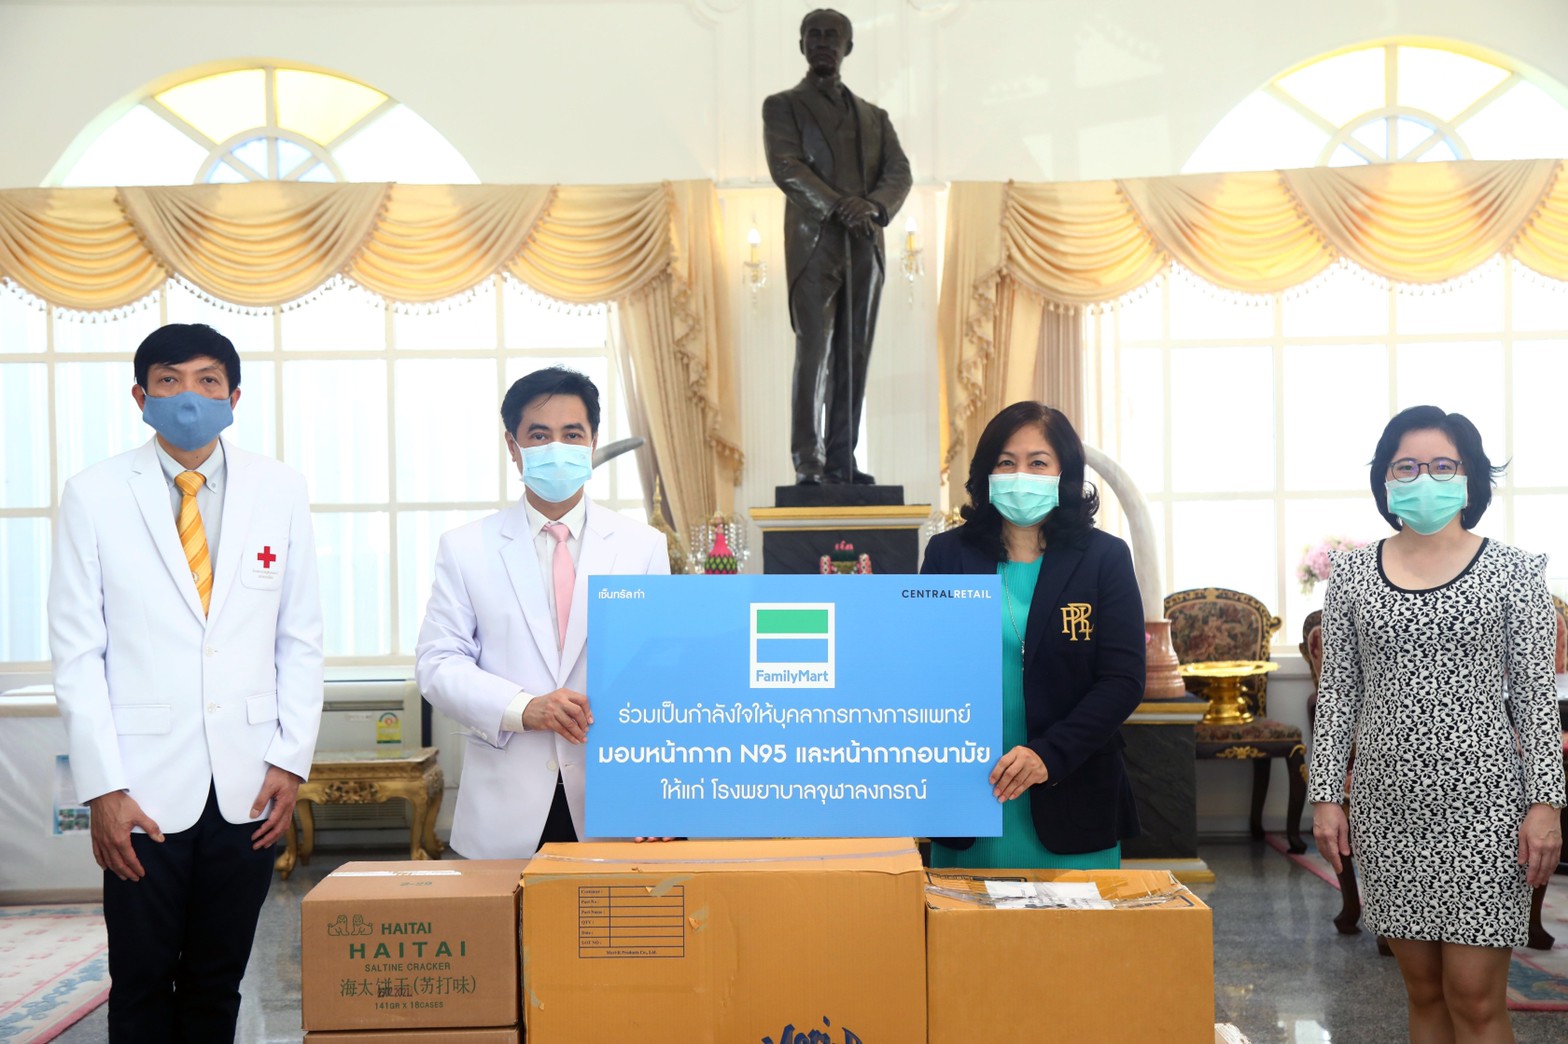 ภาพข่าว: เซ็นทรัล ฟู้ด รีเทลและแฟมิลี่มาร์ท มอบหน้ากากพร้อมด้วยอาหารและเครื่องดื่ม ณ โรงพยาบาลจุฬาลงกรณ์ สภากาชาดไทย